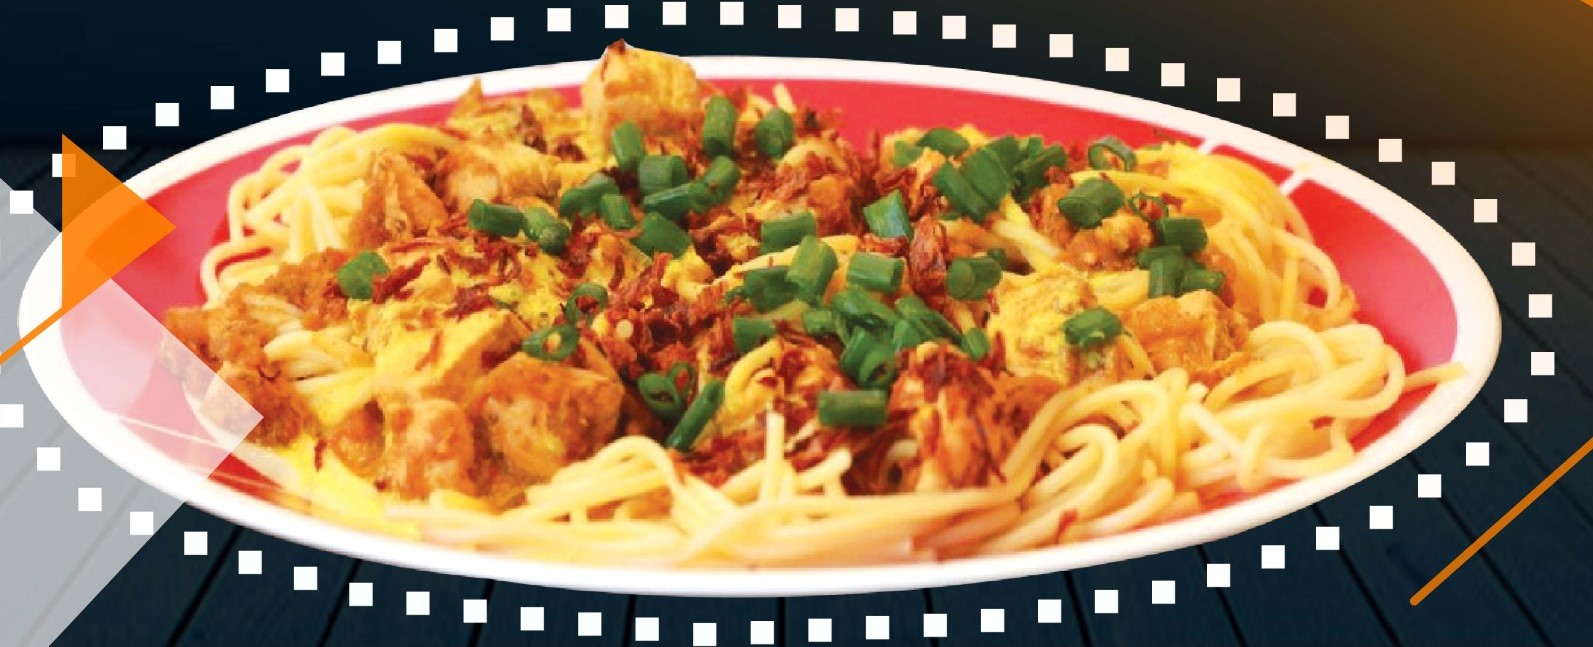 Order Singapuri Chicken Noodles Rice food online from Spinzer Restaurant store, Chicago on bringmethat.com